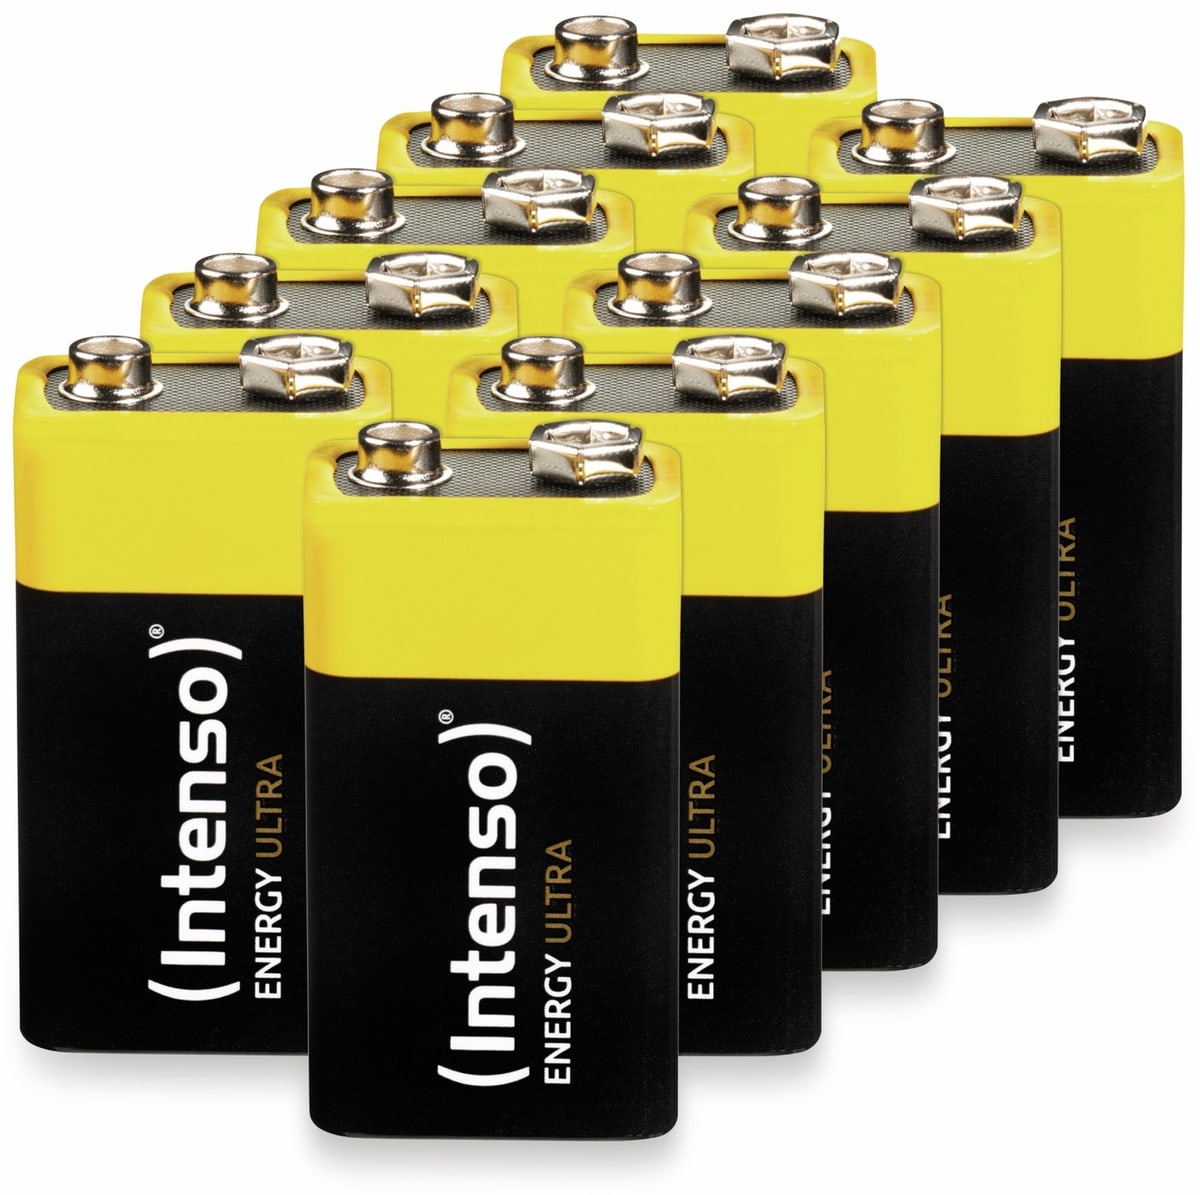 INTENSO 9V-Blockbatterie Energy Ultra, 6LR61, E-Block, 10er-Set von Intenso